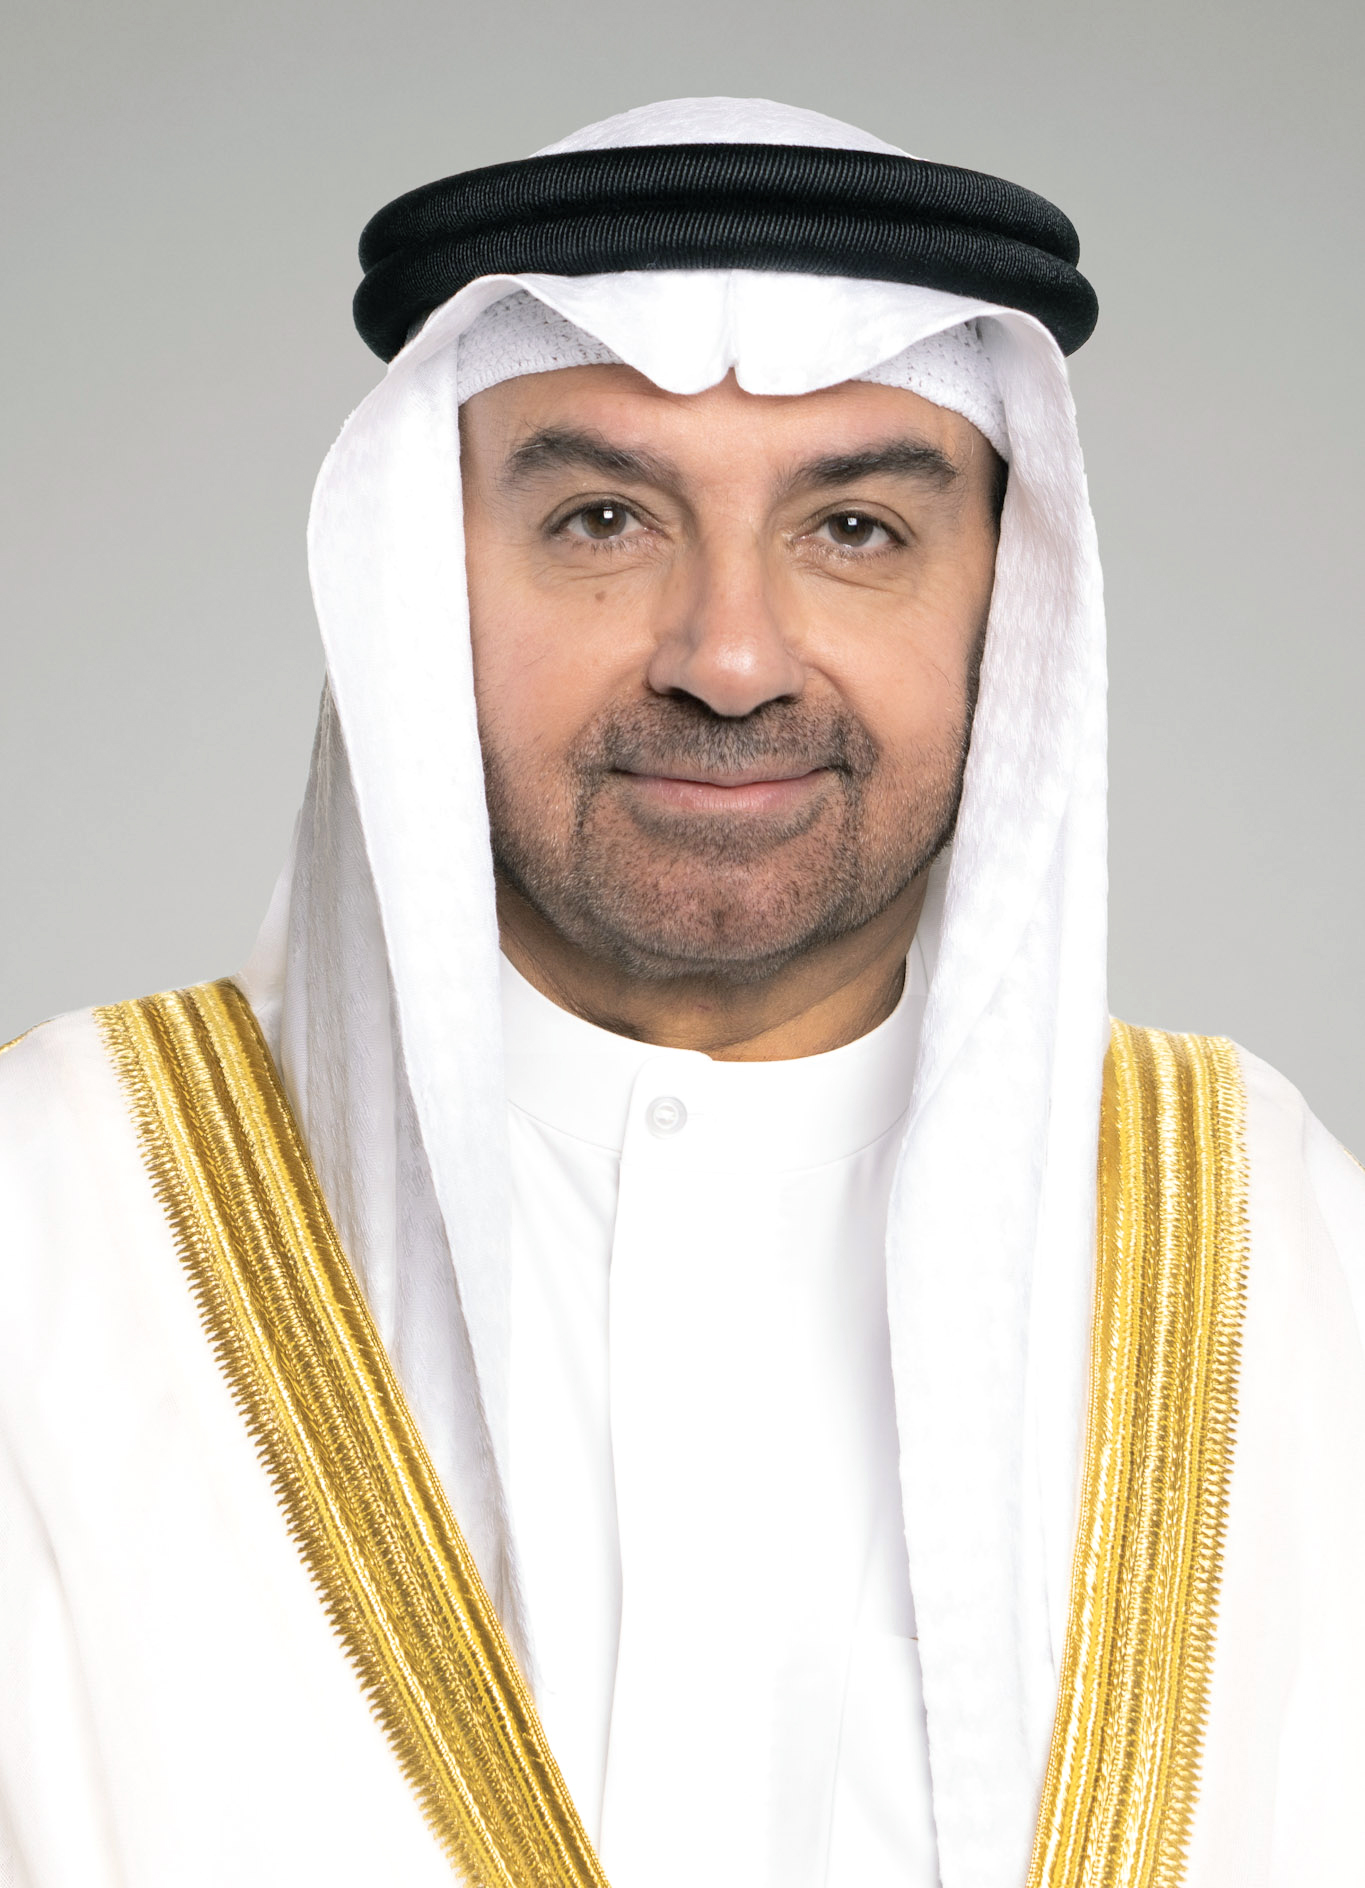 نائب رئيس مجلس الوزراء ووزير النفط ووزير الدولة للشؤون الاقتصادية والاستثمار الدكتور سعد البراك